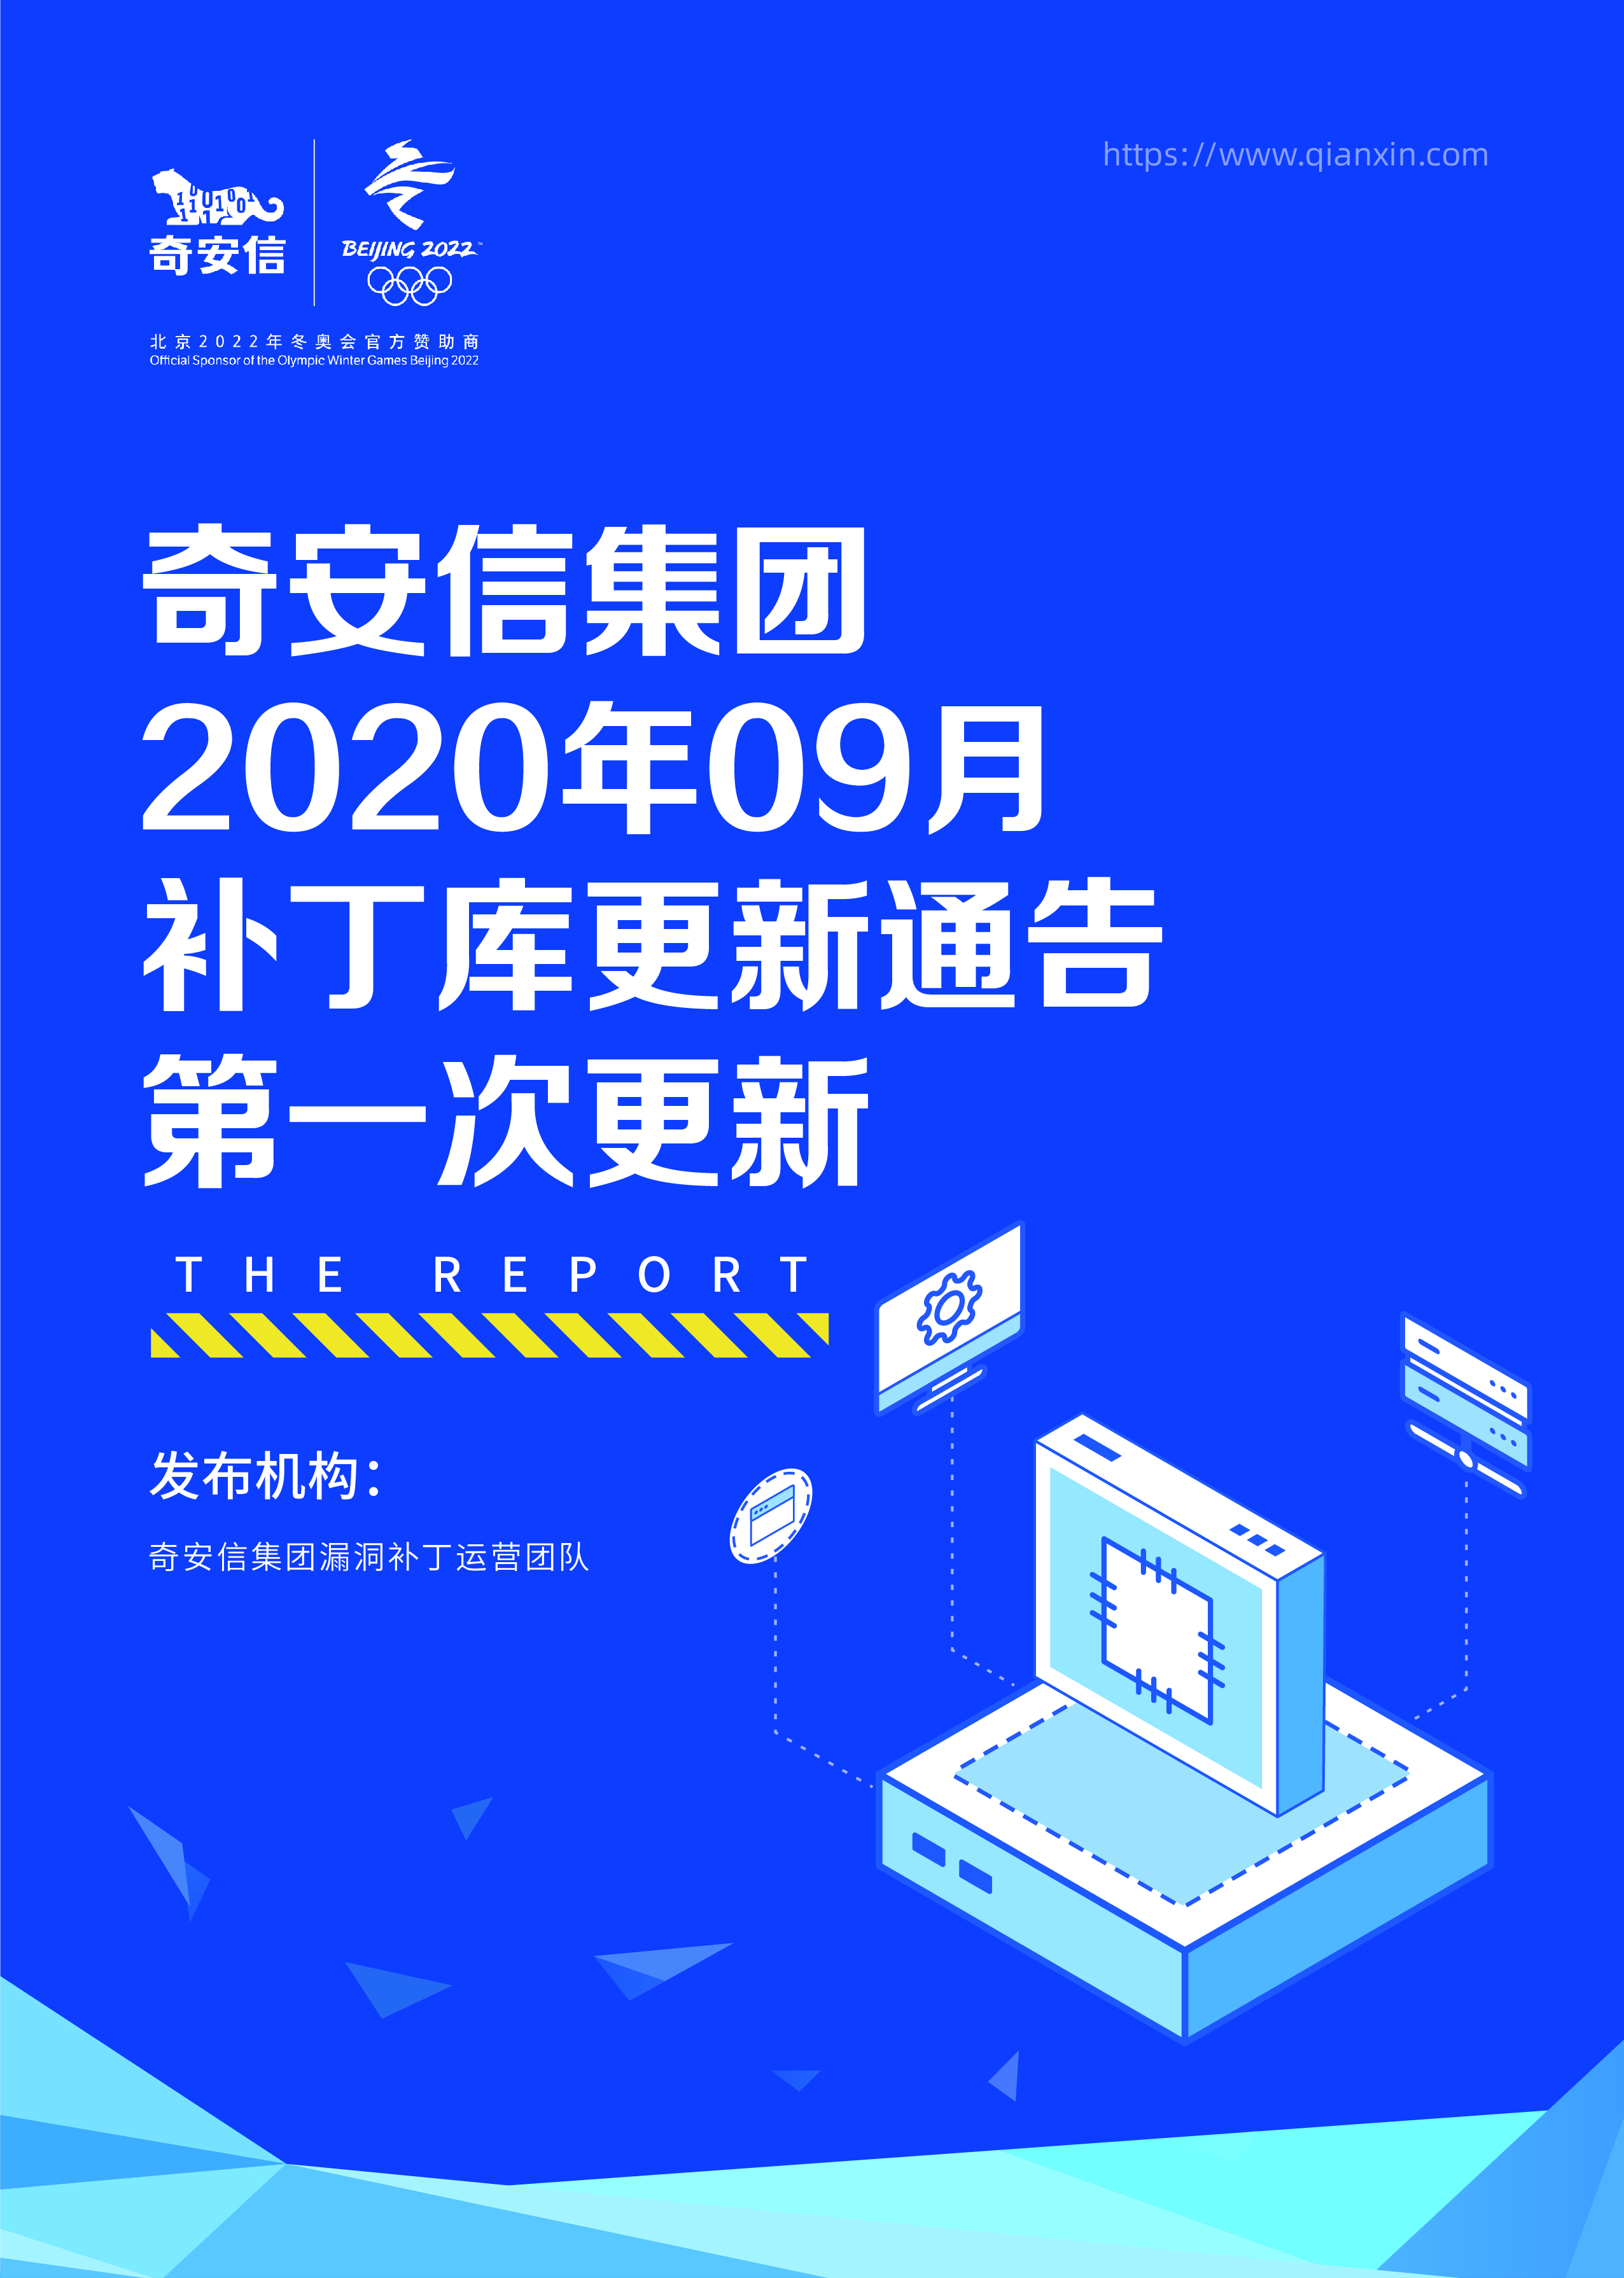 奇安信集团2020年09月补丁库更新通告第一次更新